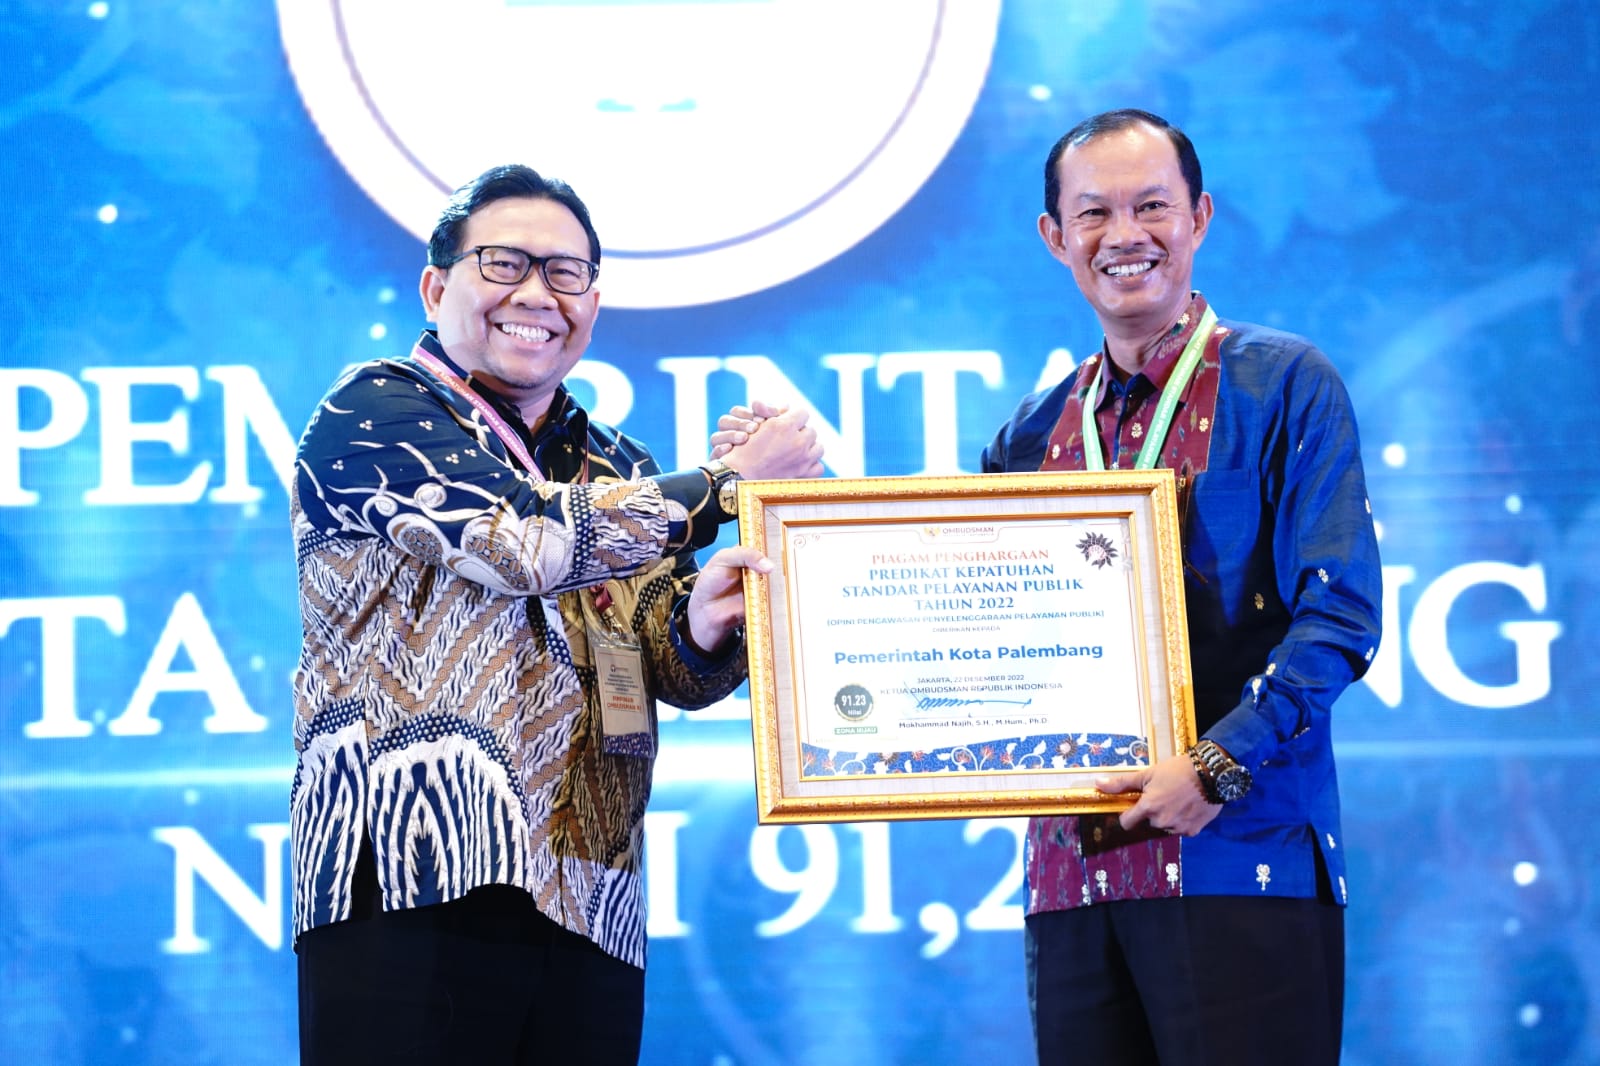 Wali Kota Palembang Terima Penghargaan Predikat Kepatuhan Standar Pelayanan Publik